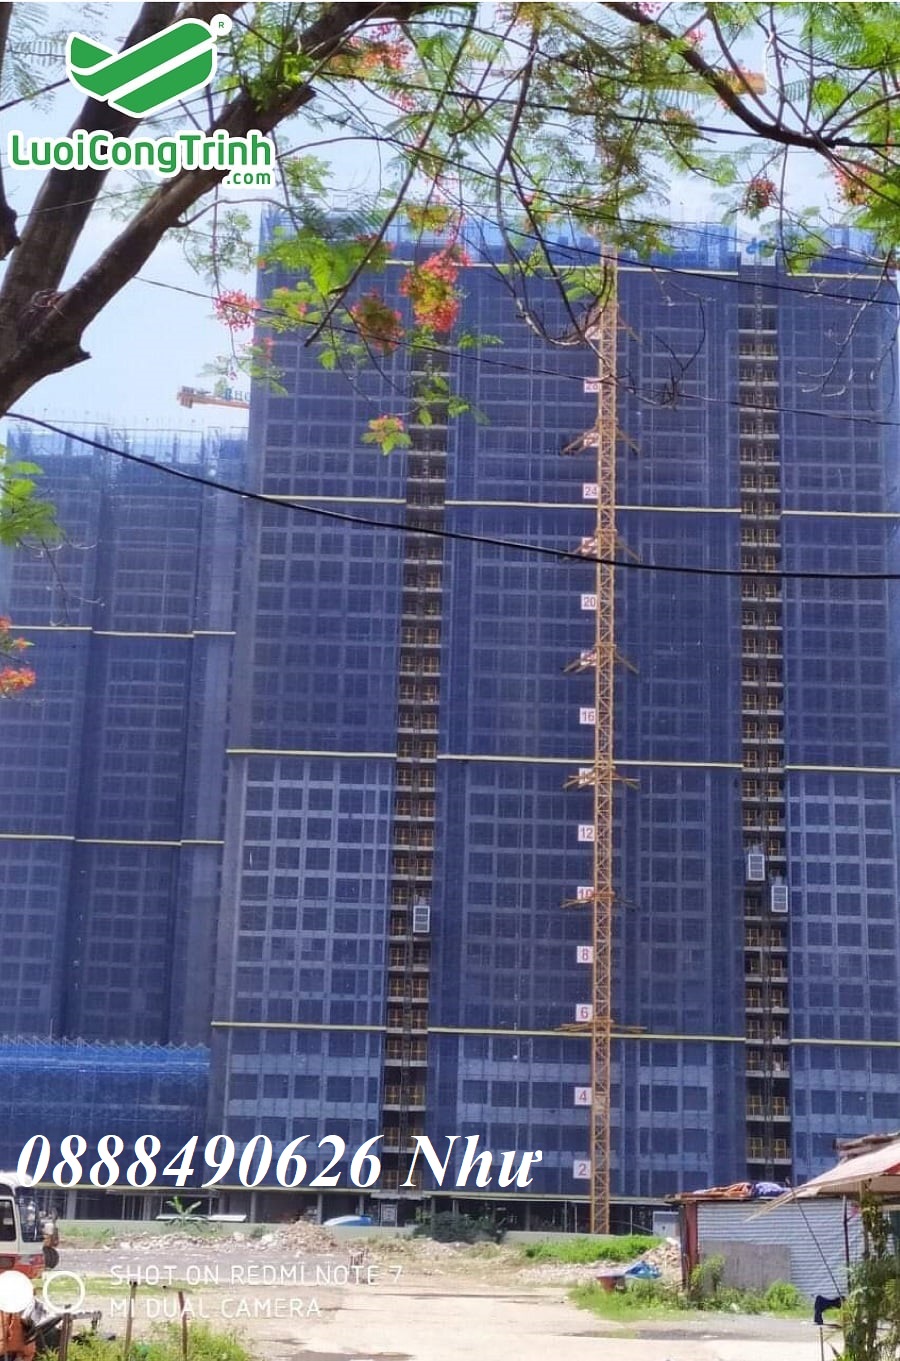 Lưới chắn bụi cho công trình xây dựng, chung cư, nhà cao tầng